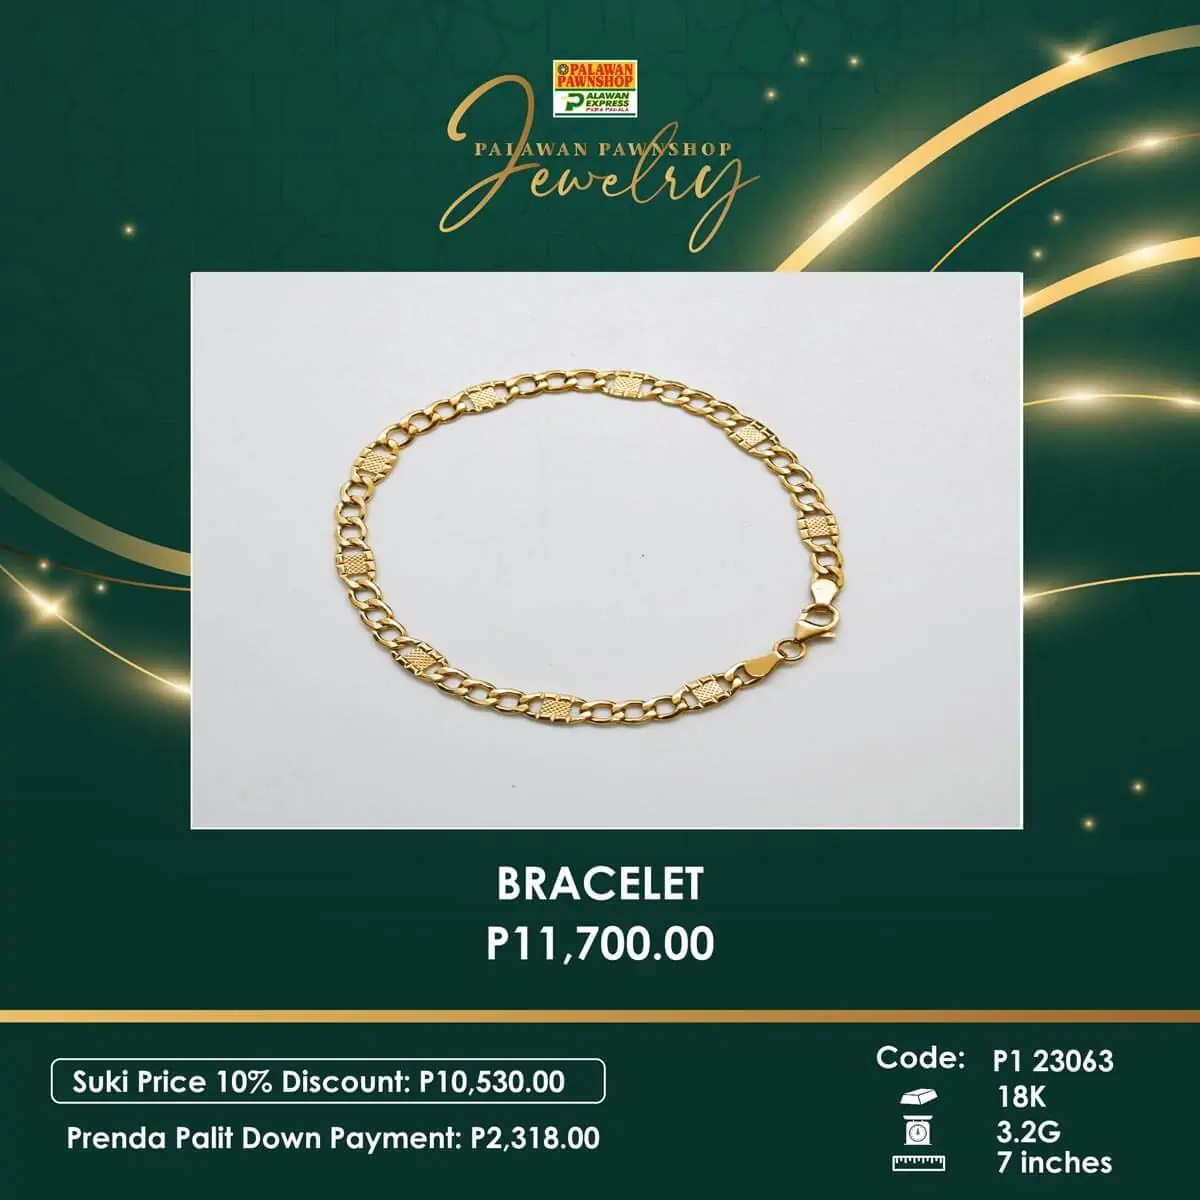 palawan pawnshop jewelry bracelet